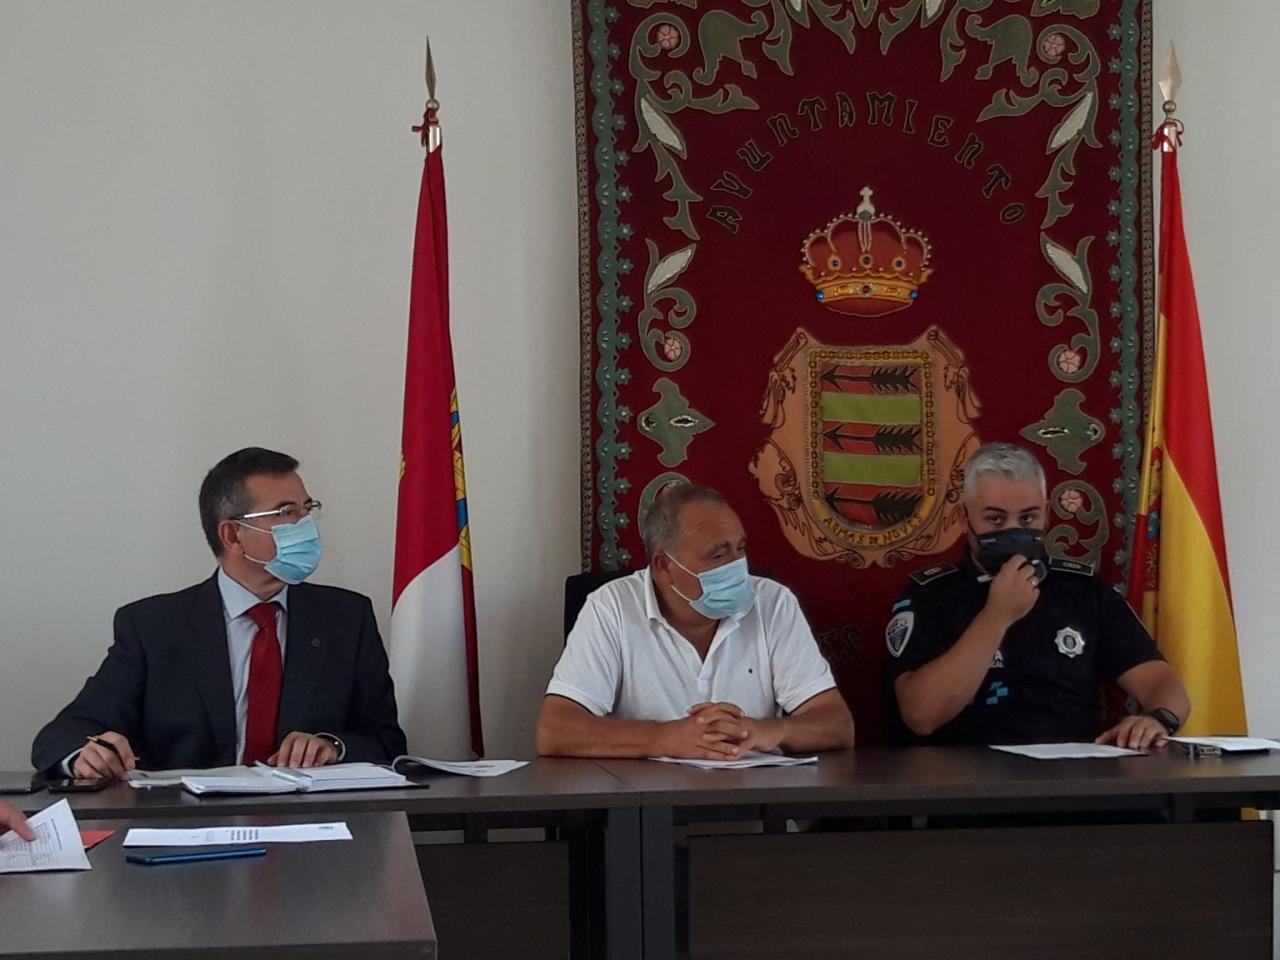 El subdelegado del Gobierno de España en la provincia de Toledo ha presidido con el alcalde de Novés una reunión de la Junta Local de Seguridad para determinar el protocolo a seguir ante las próximas Fiestas Patronales